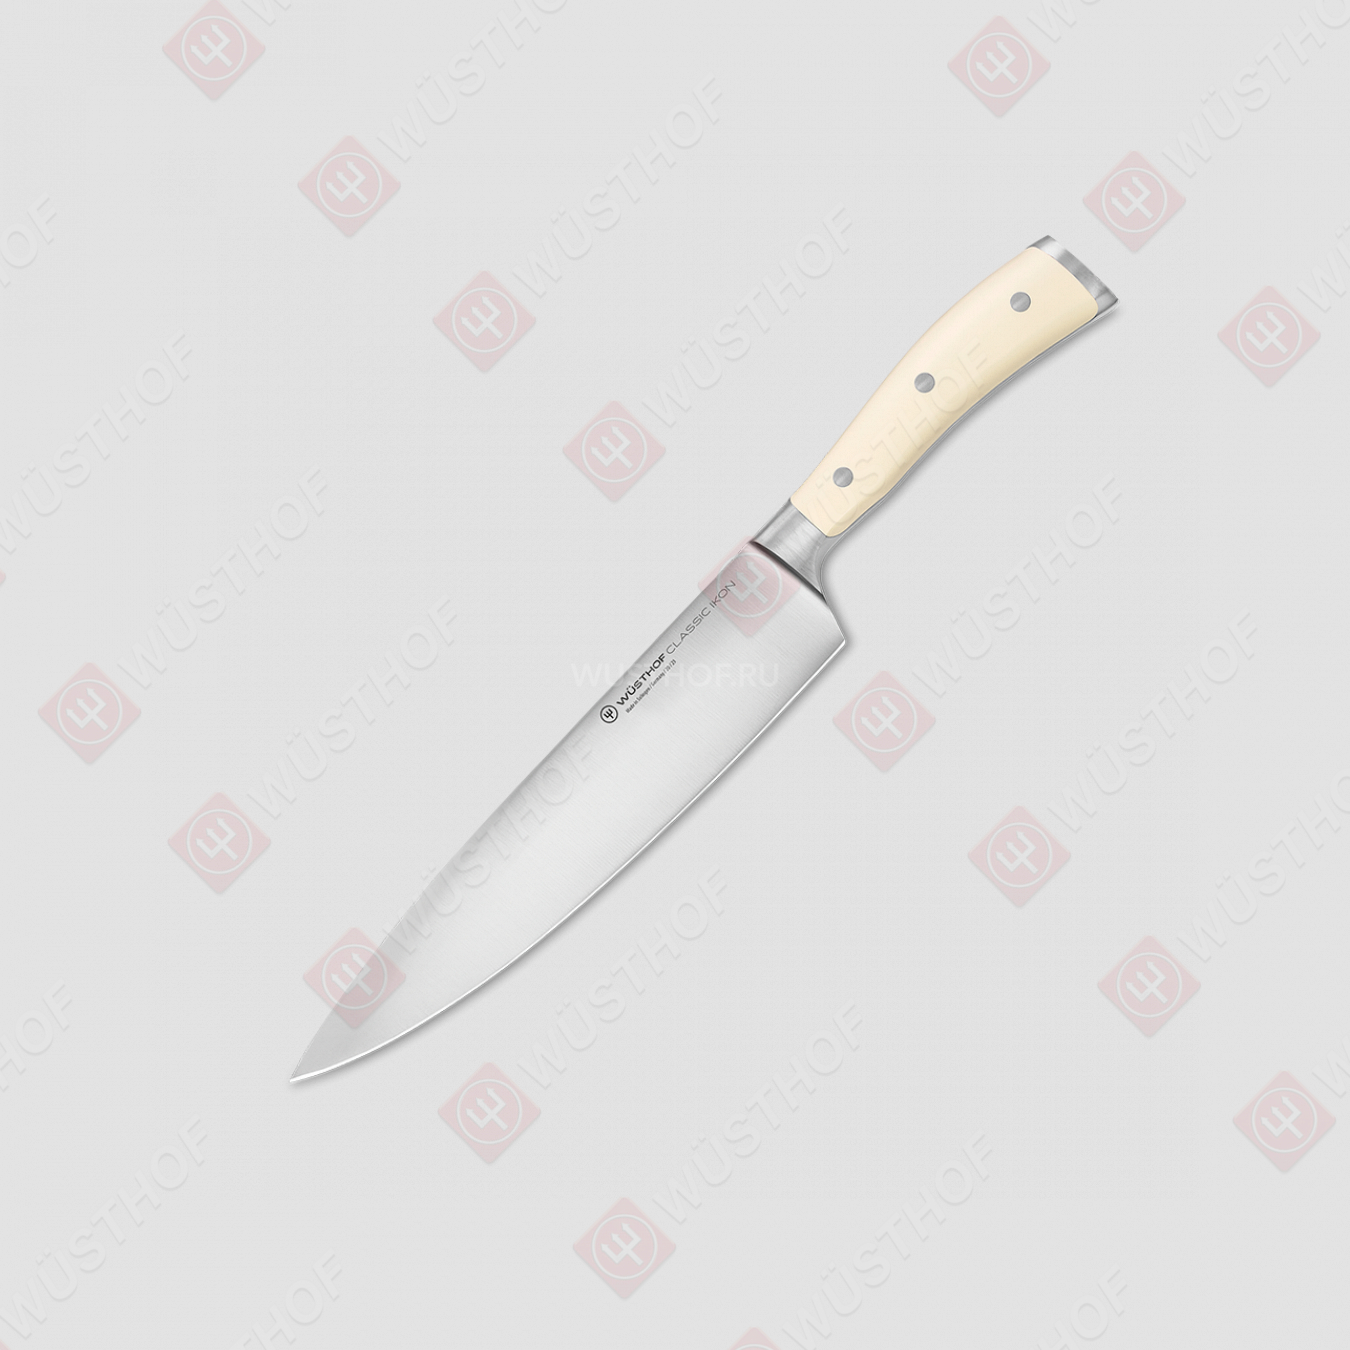 Профессиональный поварской кухонный нож 23 см, серия Ikon Cream White, WUESTHOF, Золинген, Германия